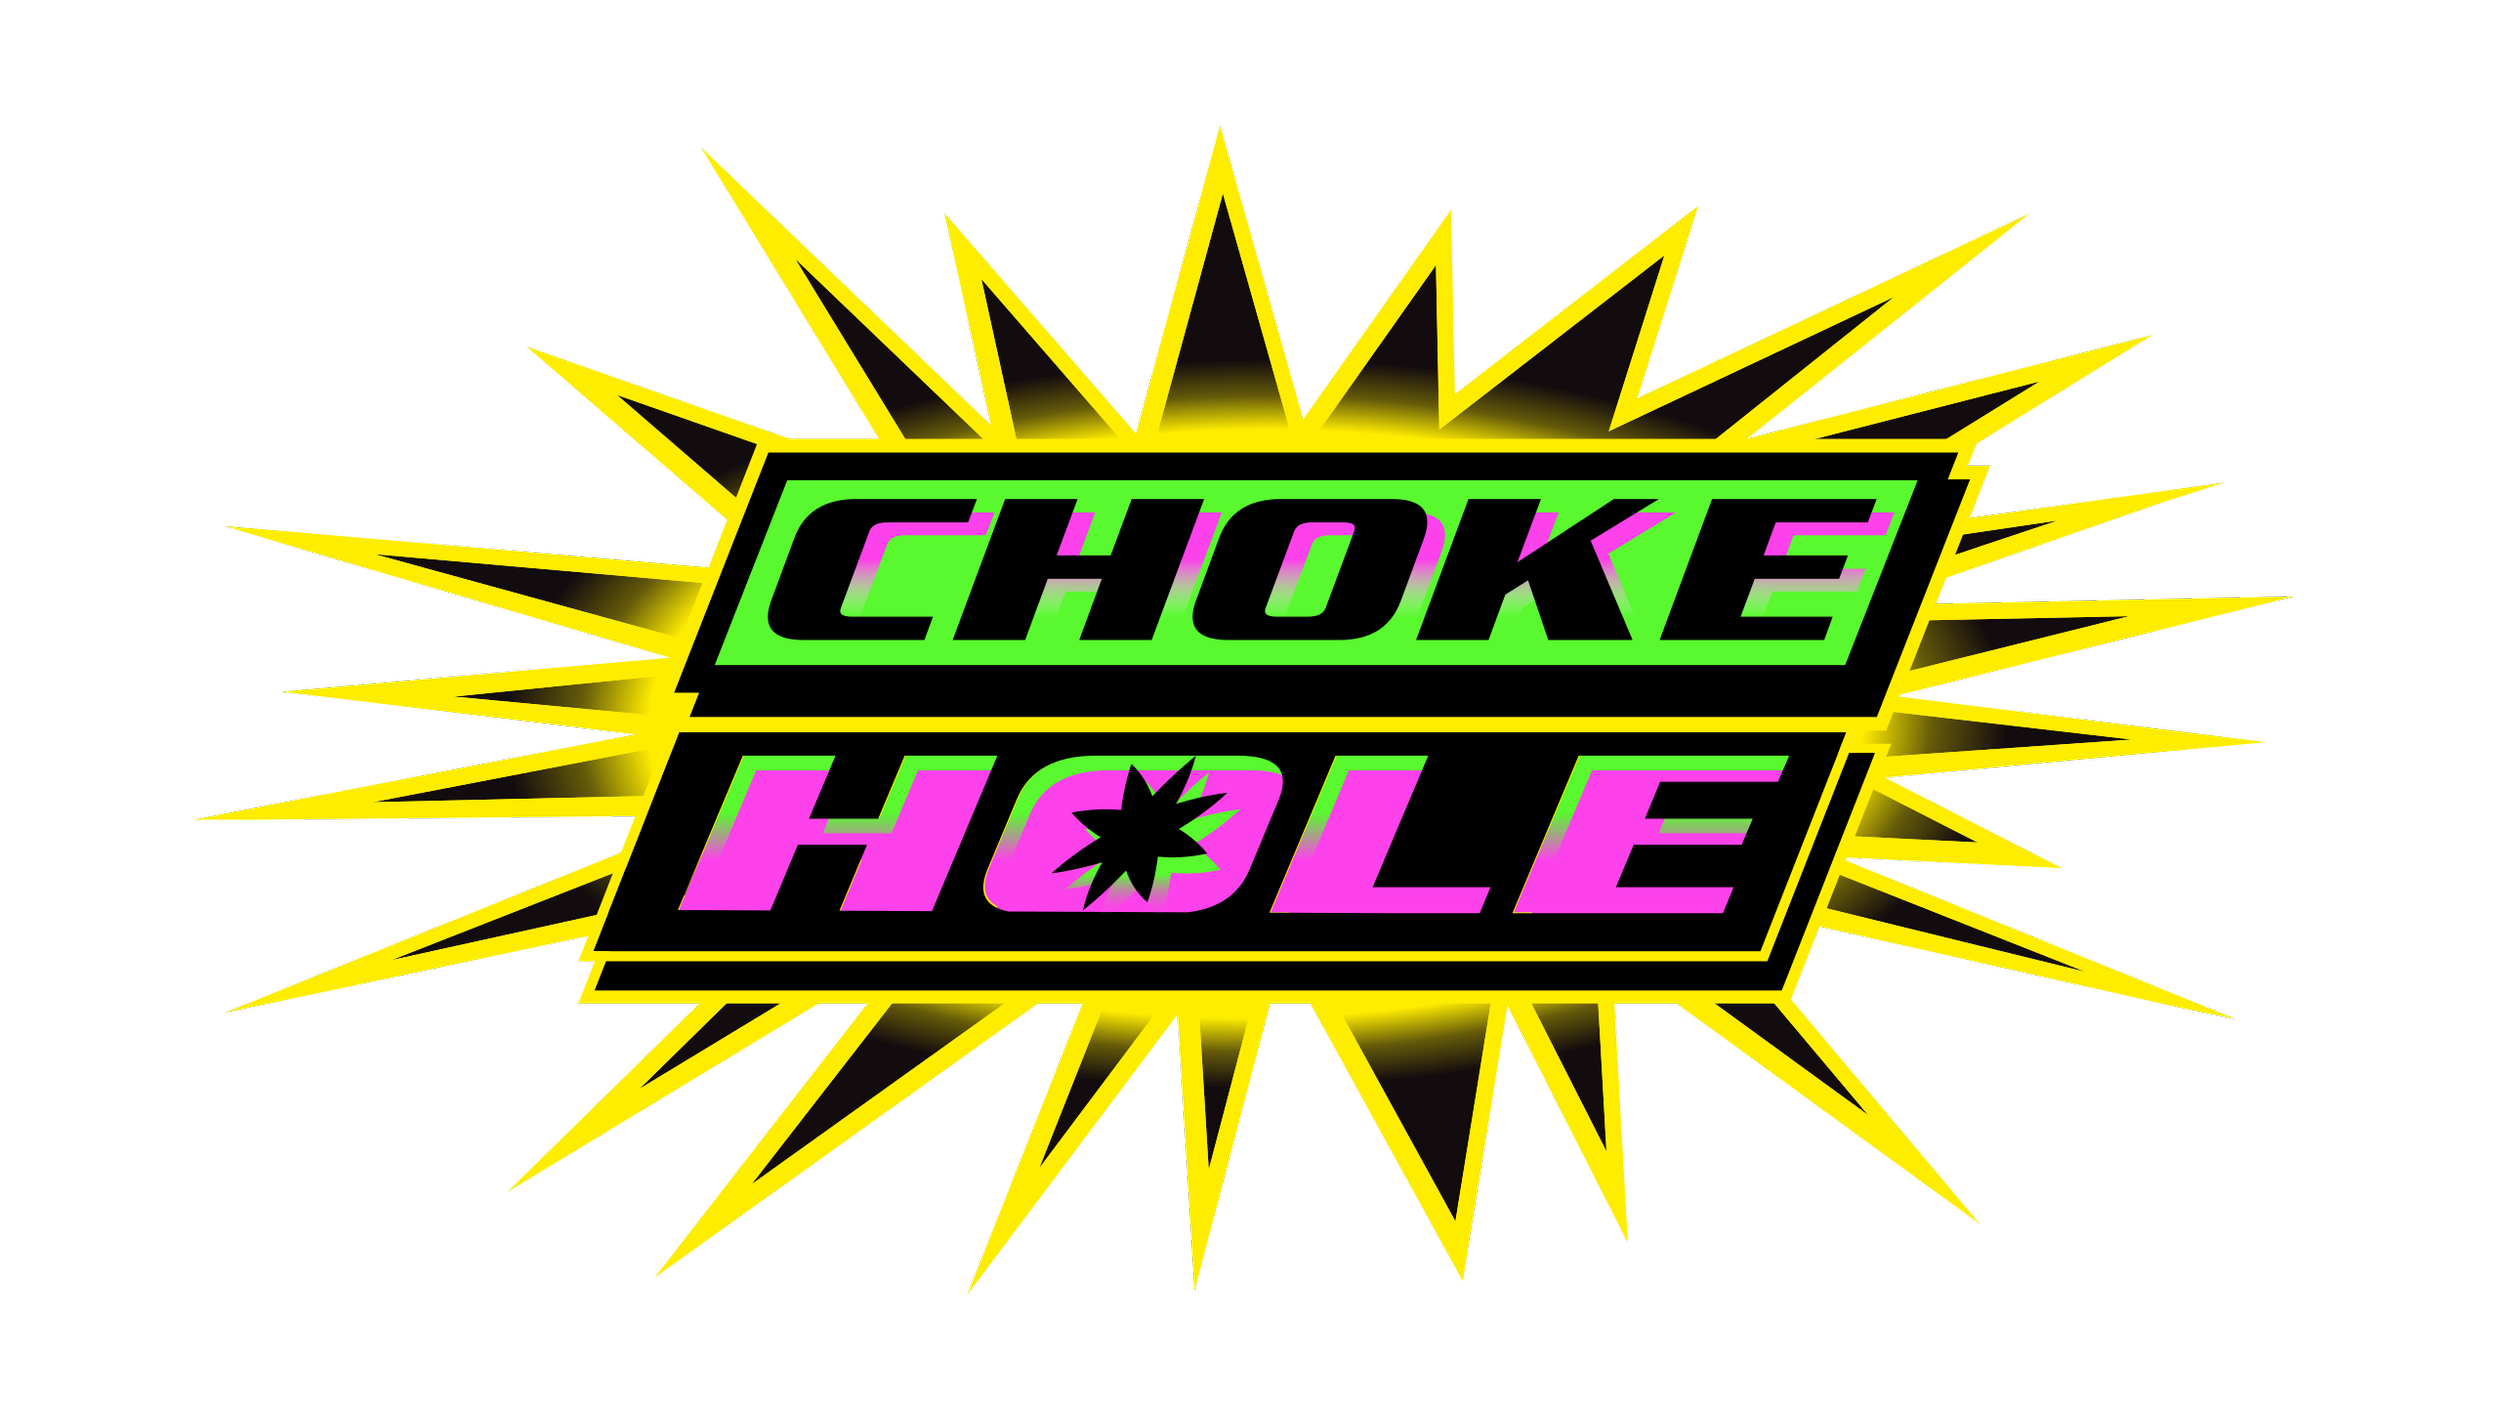 CHOKE HOLE